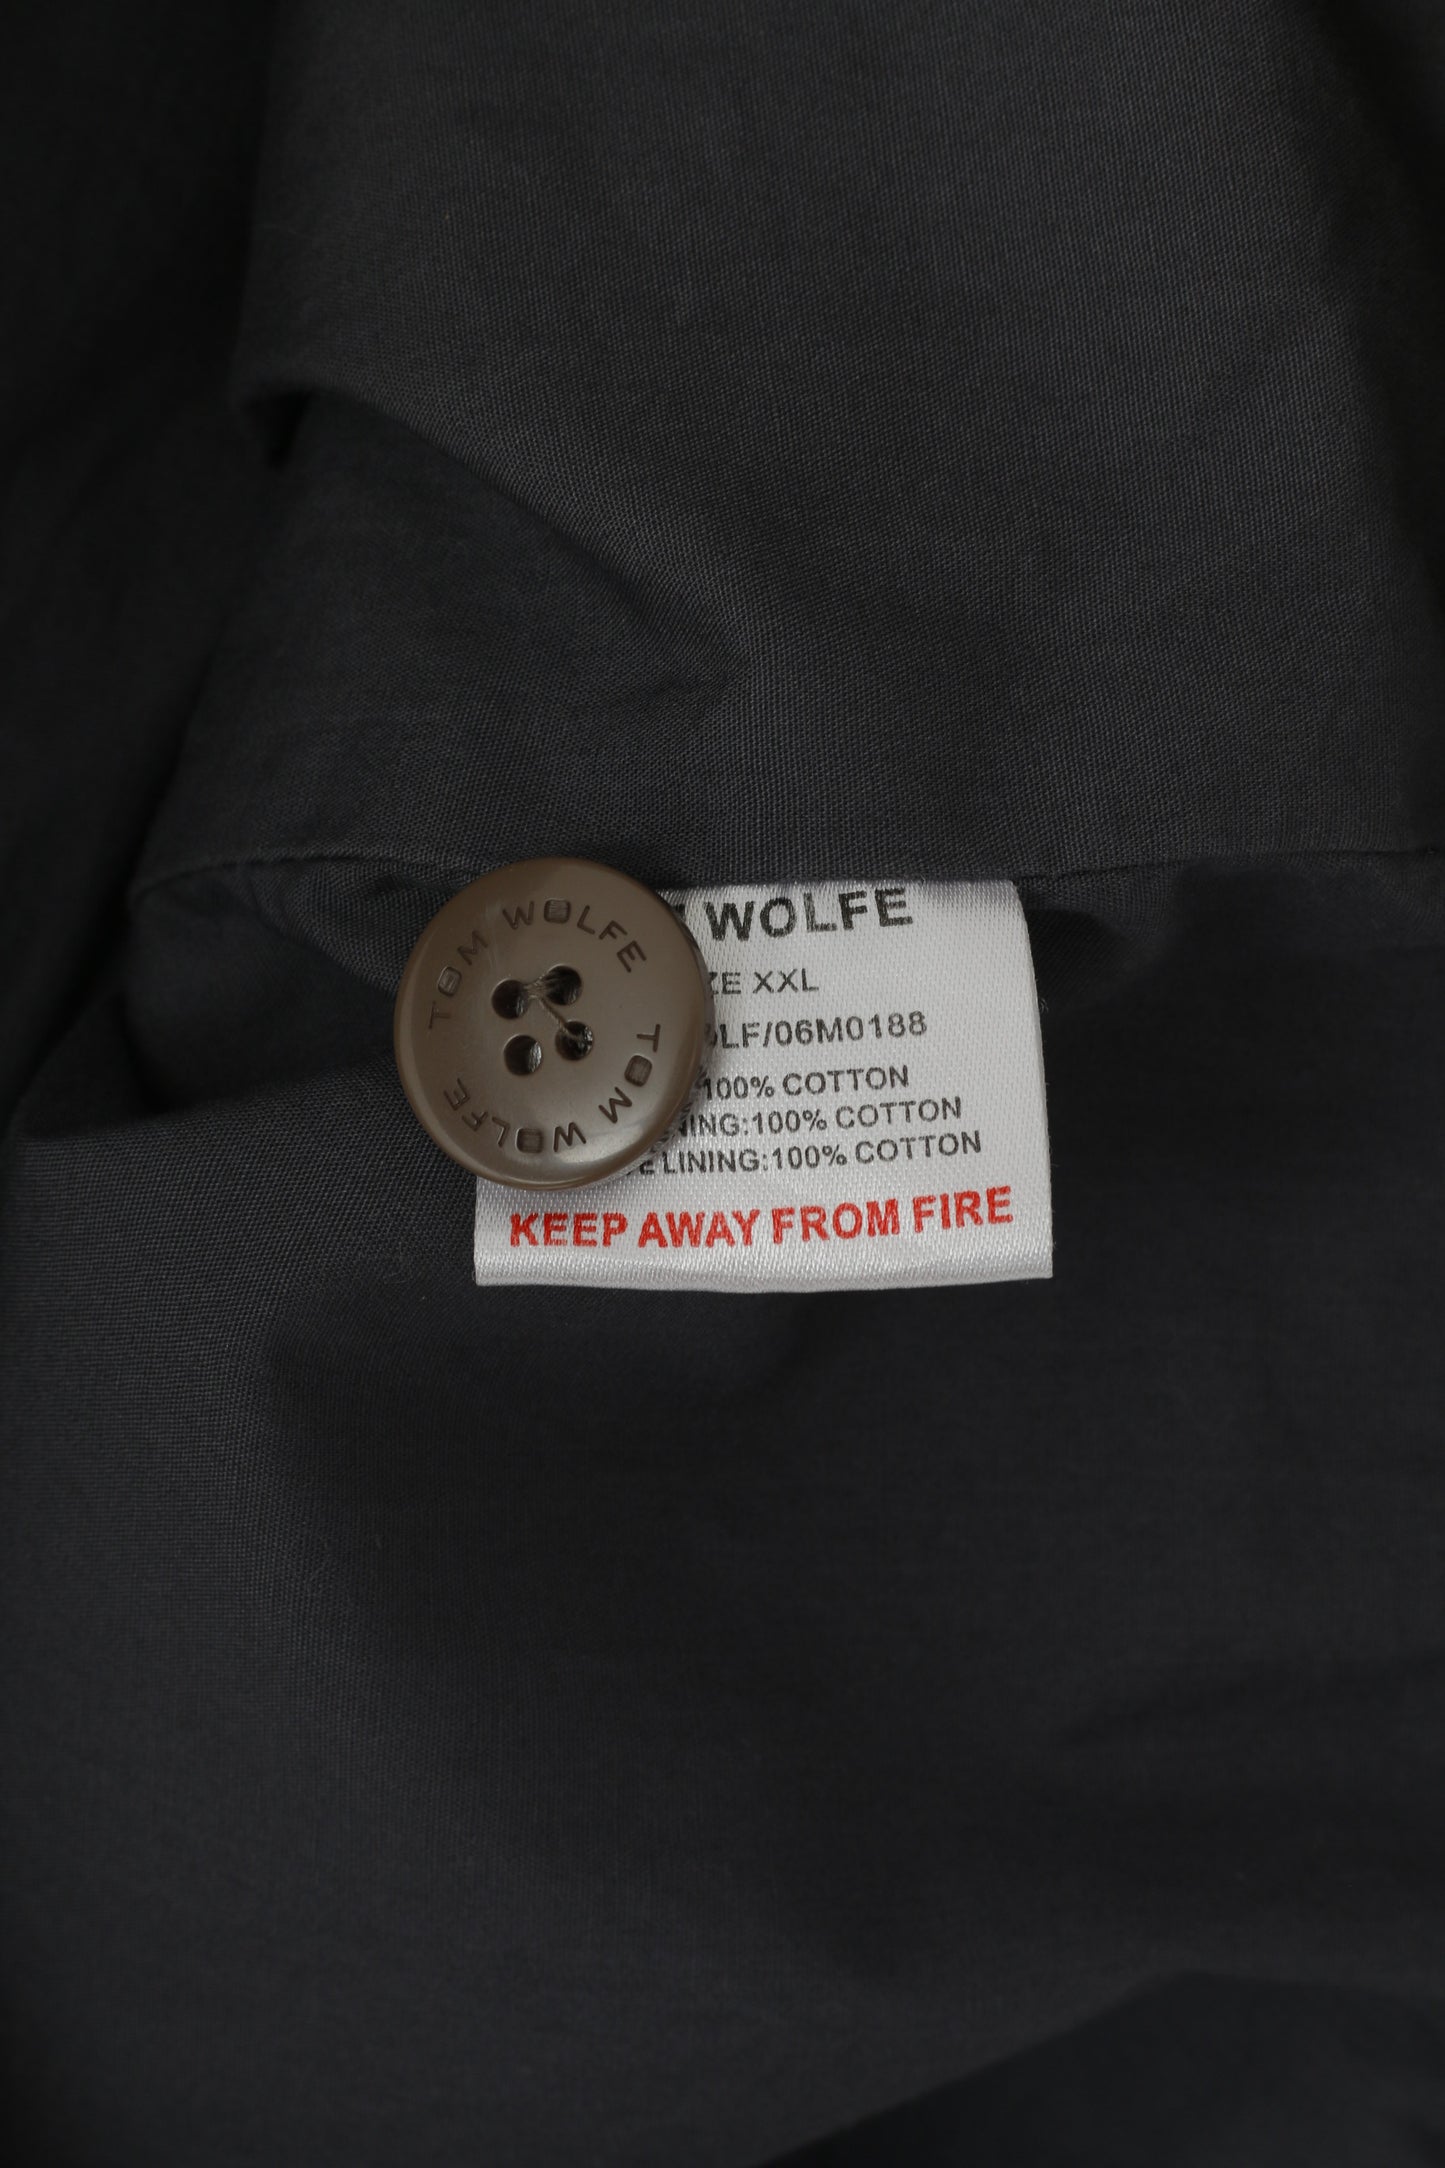 Tom Wolfe Men XXL (XL) Jacket Khaki Army Full Zipper Cotton Harrington Casual Top